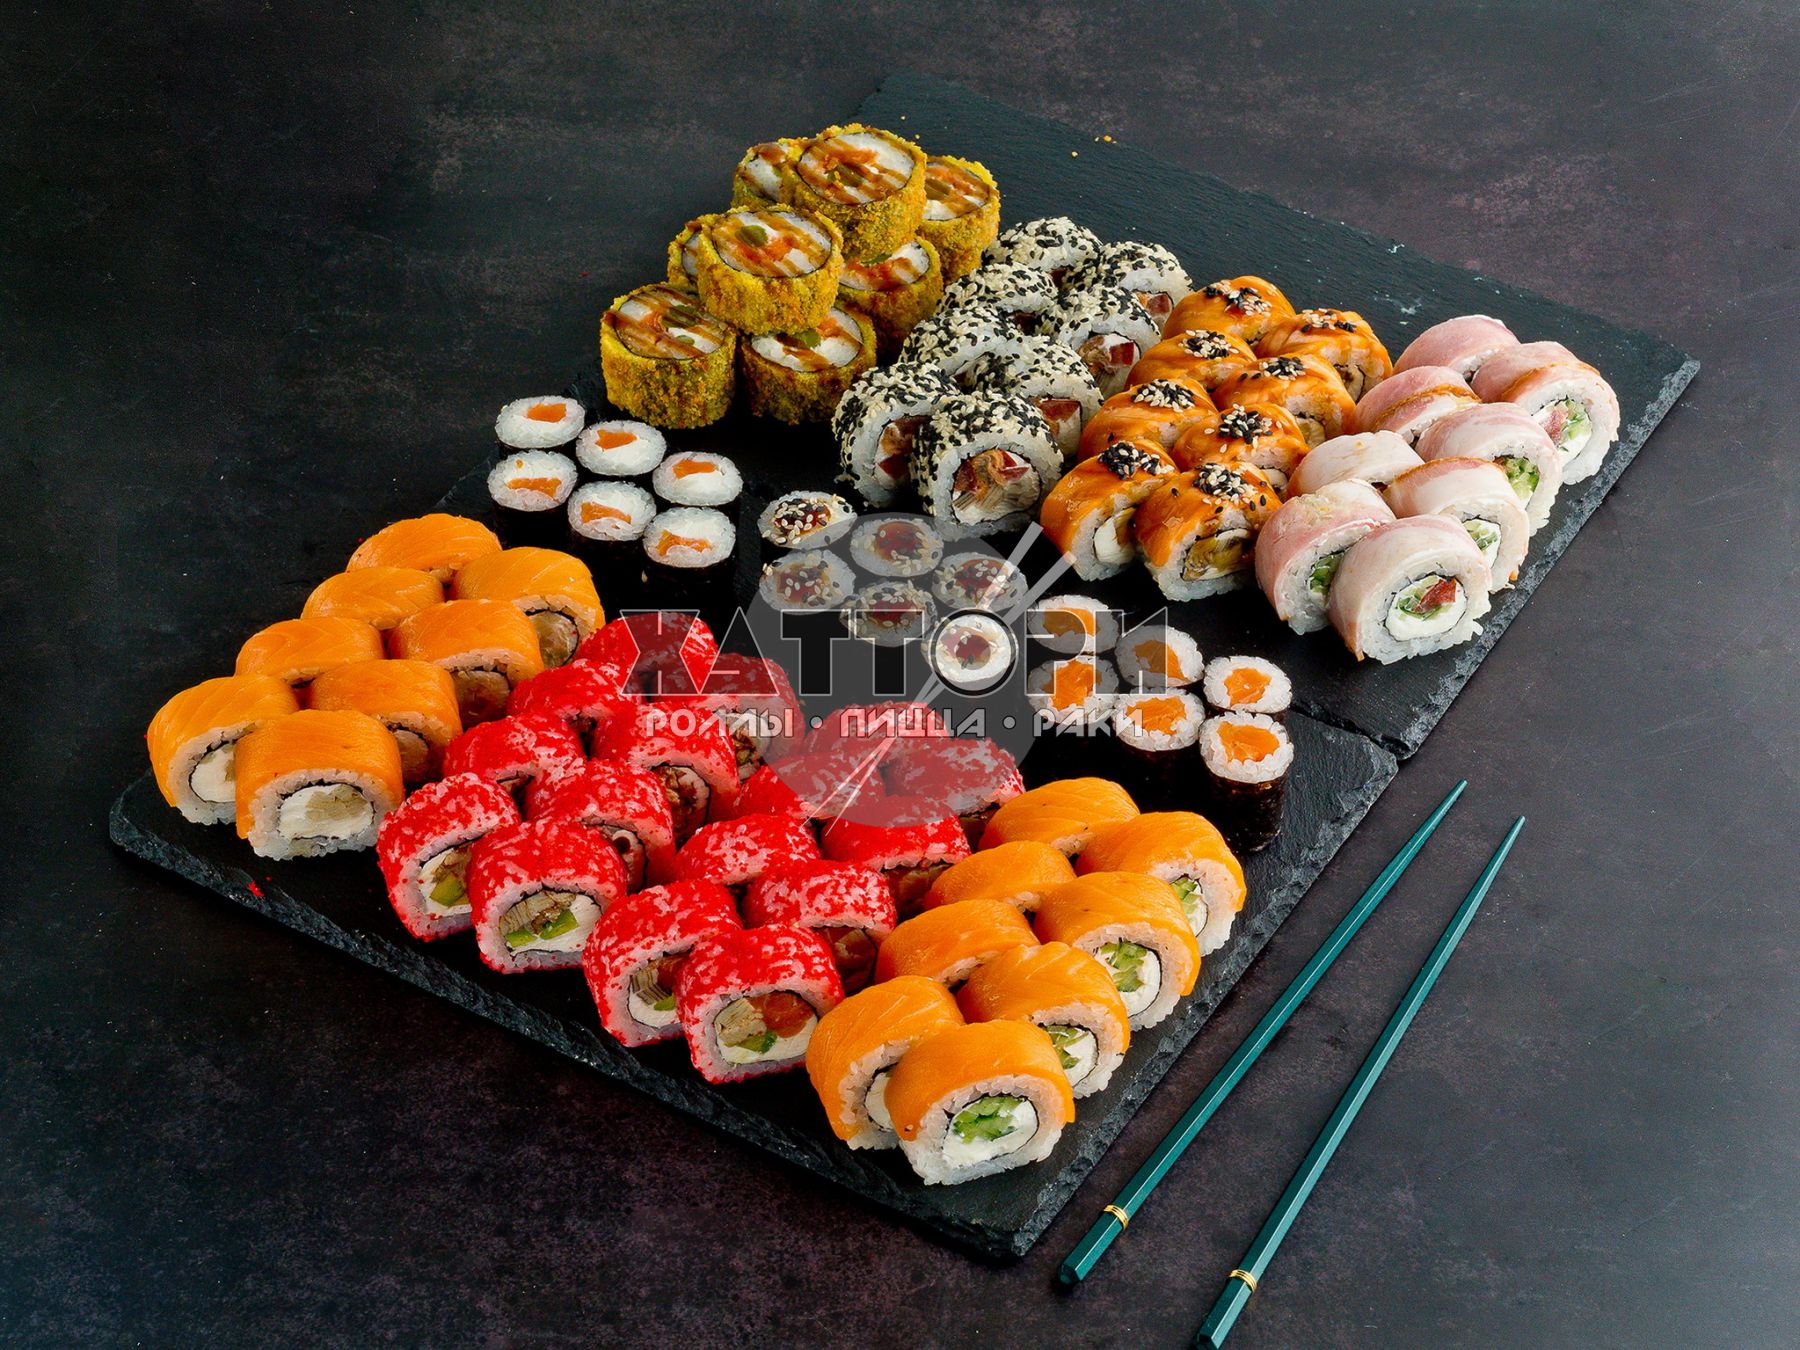 Заказать набор суши с доставкой в спб фото 89